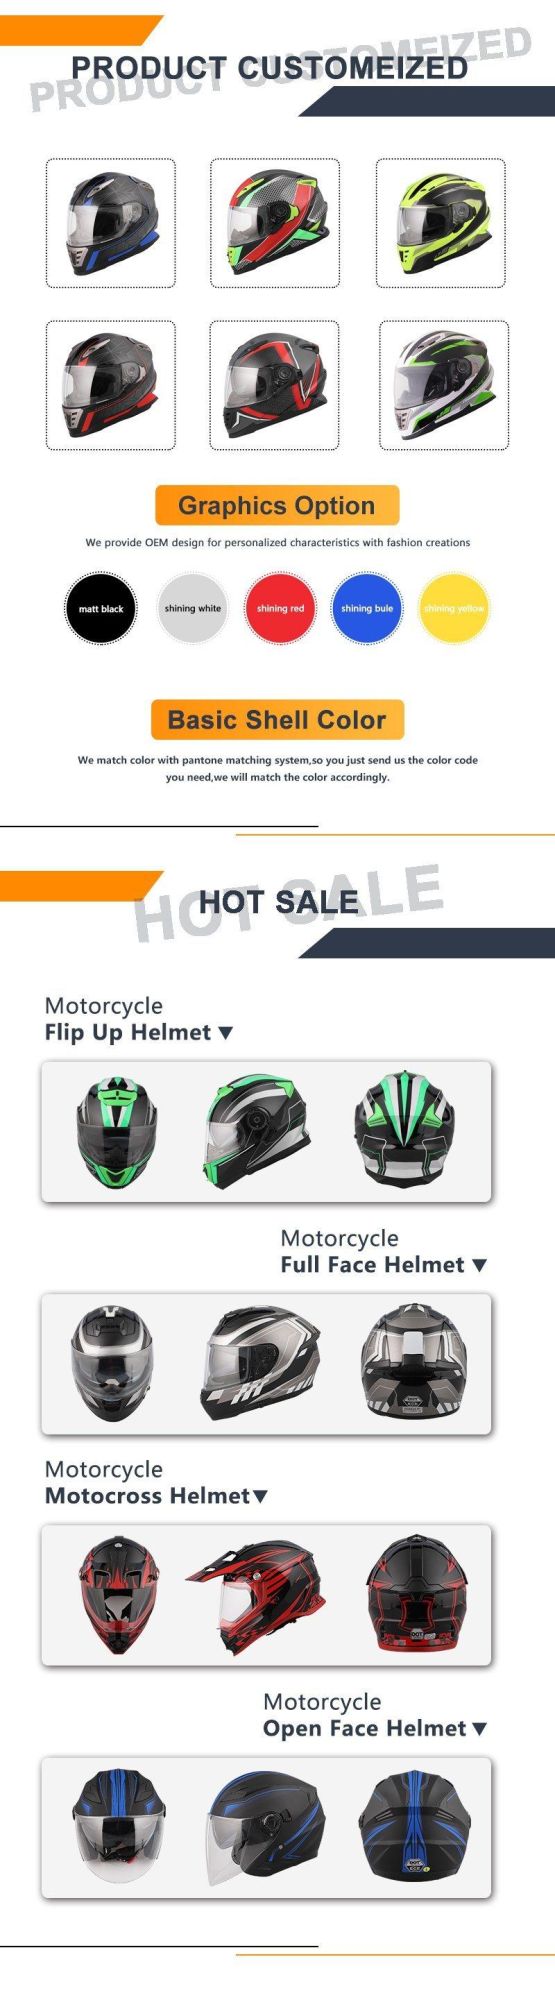 Anti-Fog Visor Retro Motorcycle Helmets Full Face Racing Helmet with DOT